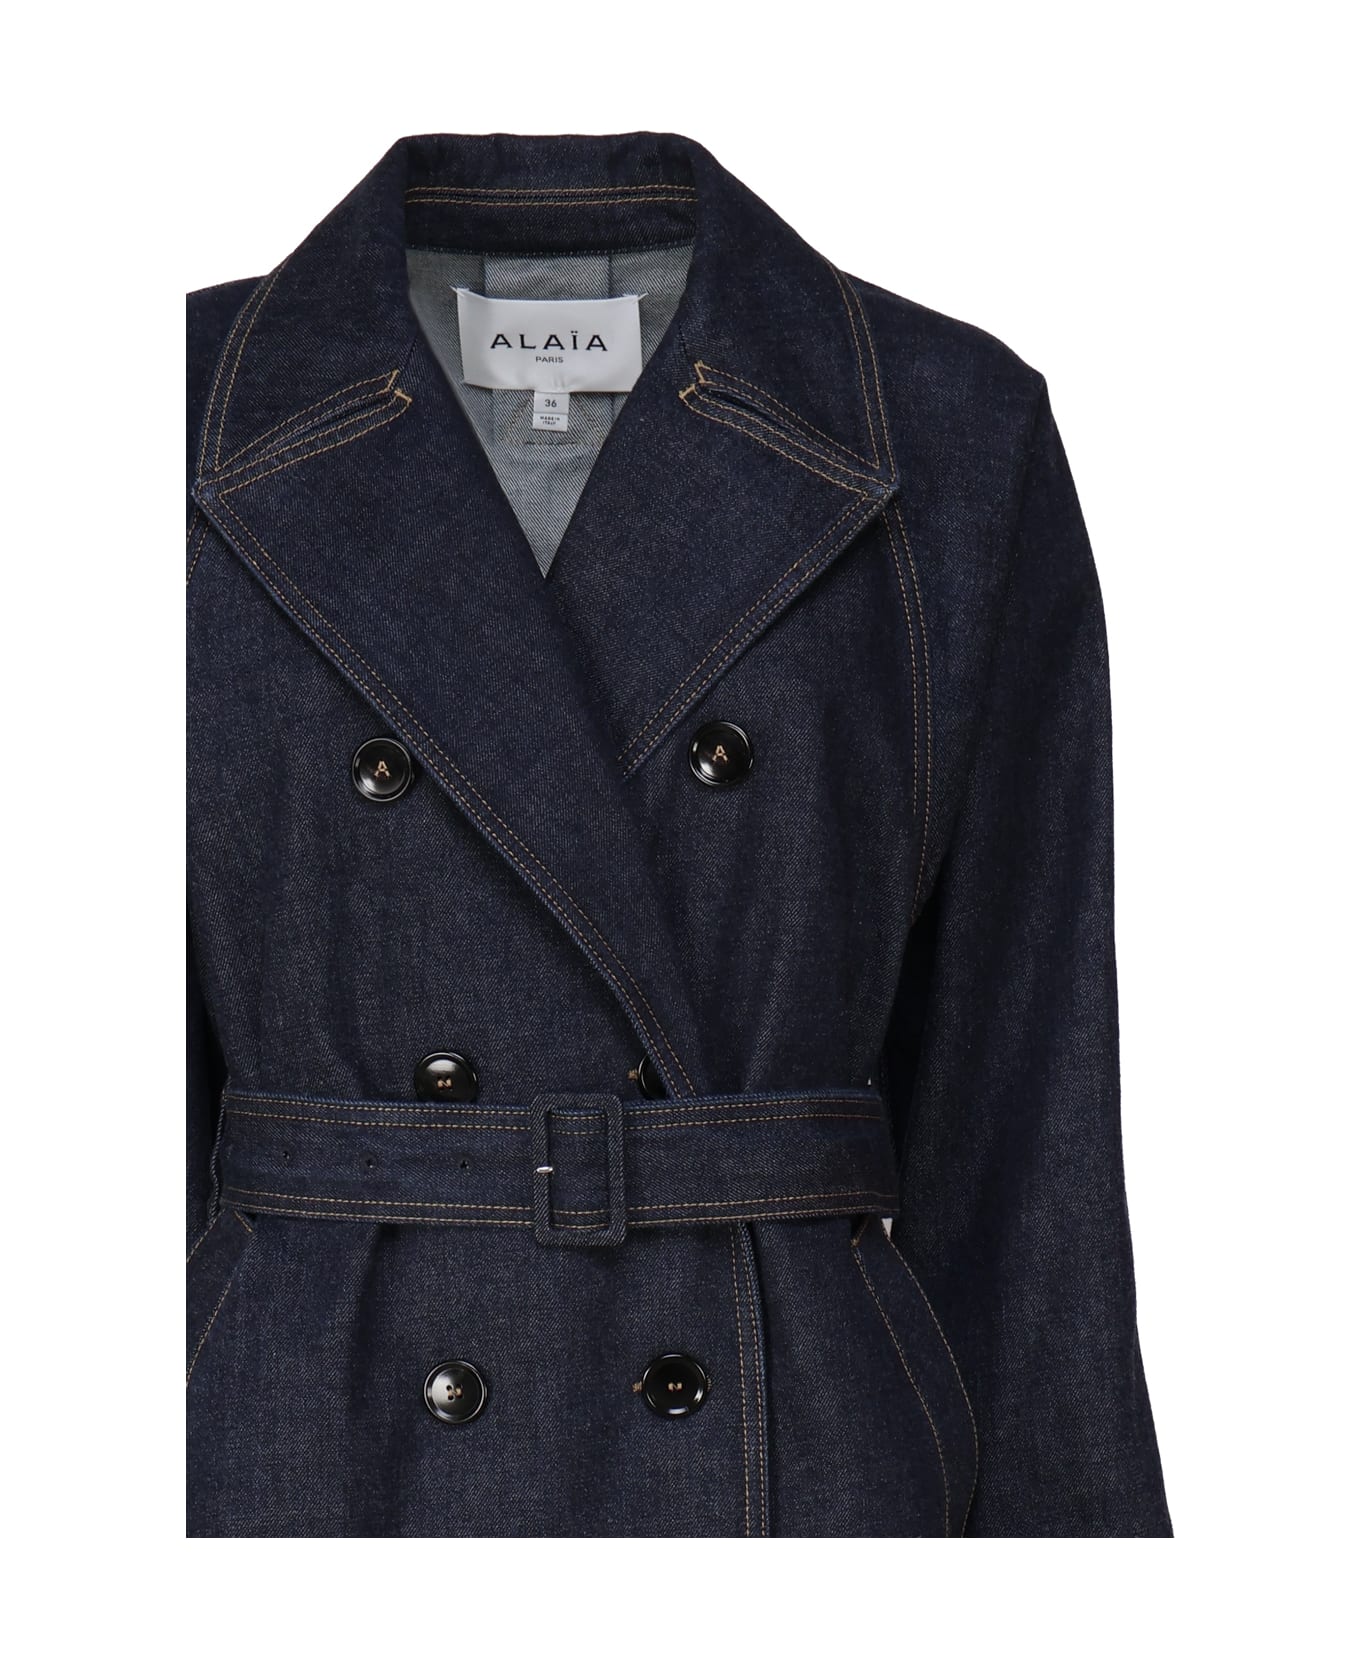 Alaia Classic Coat In Cotton Denim - Bleu denim コート